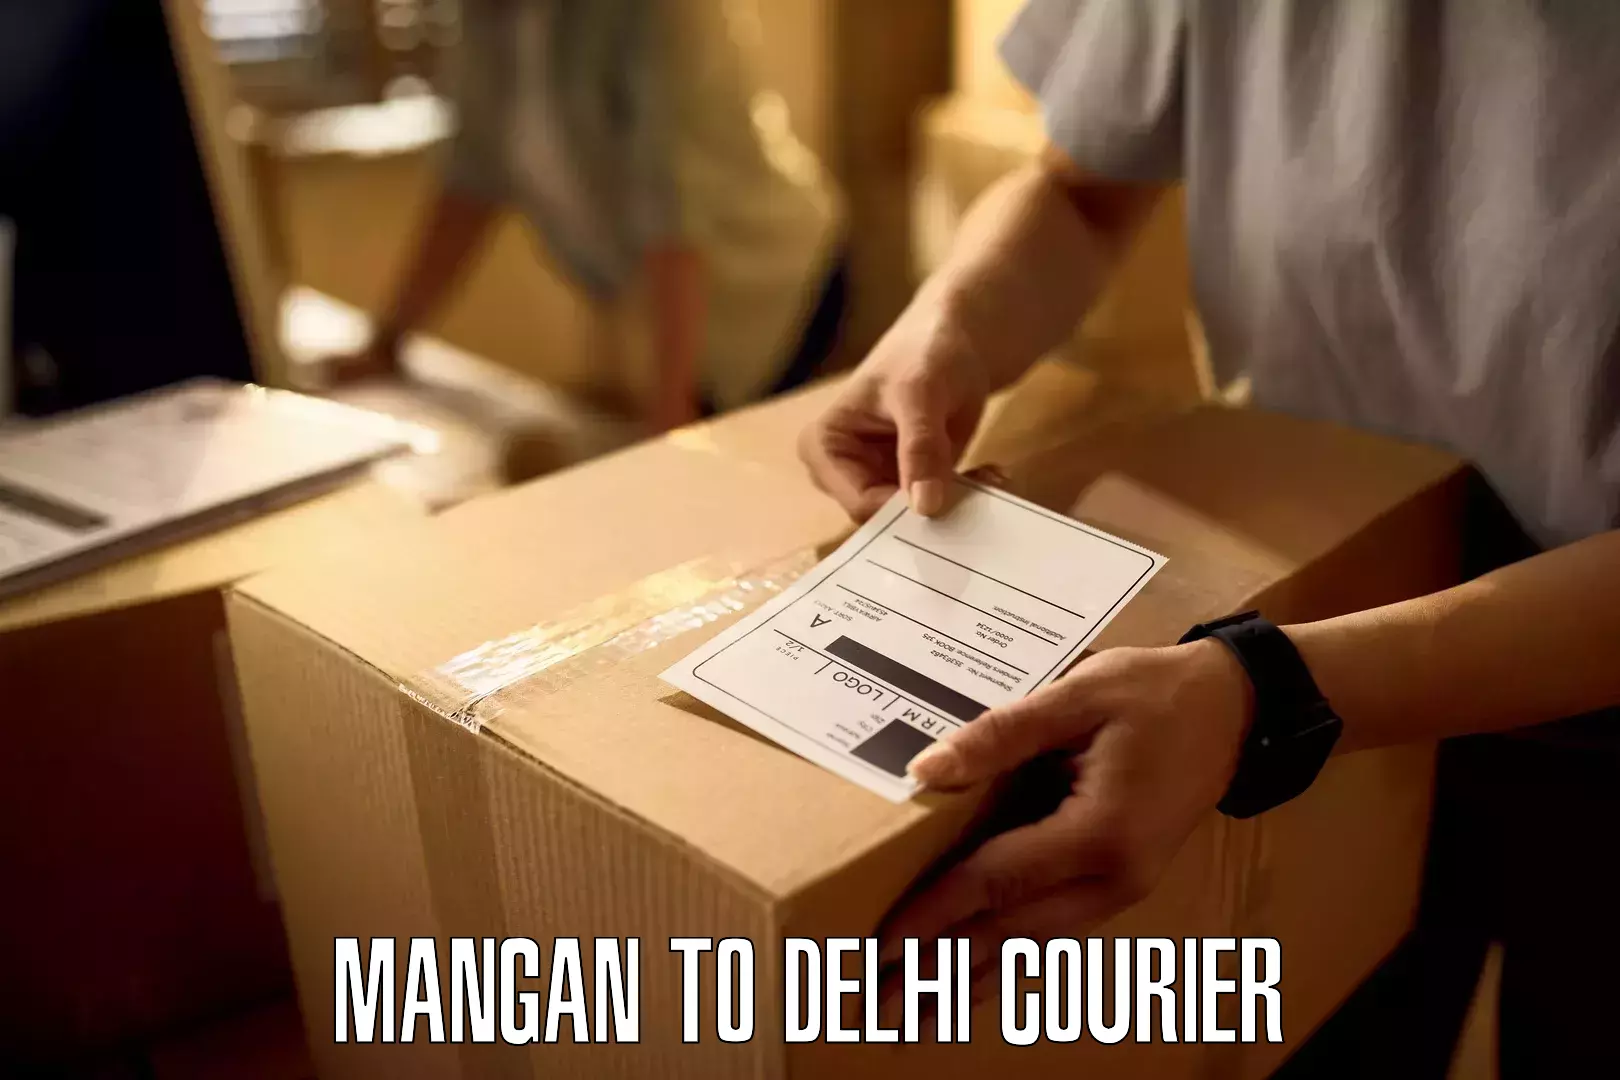 Professional parcel services Mangan to Delhi